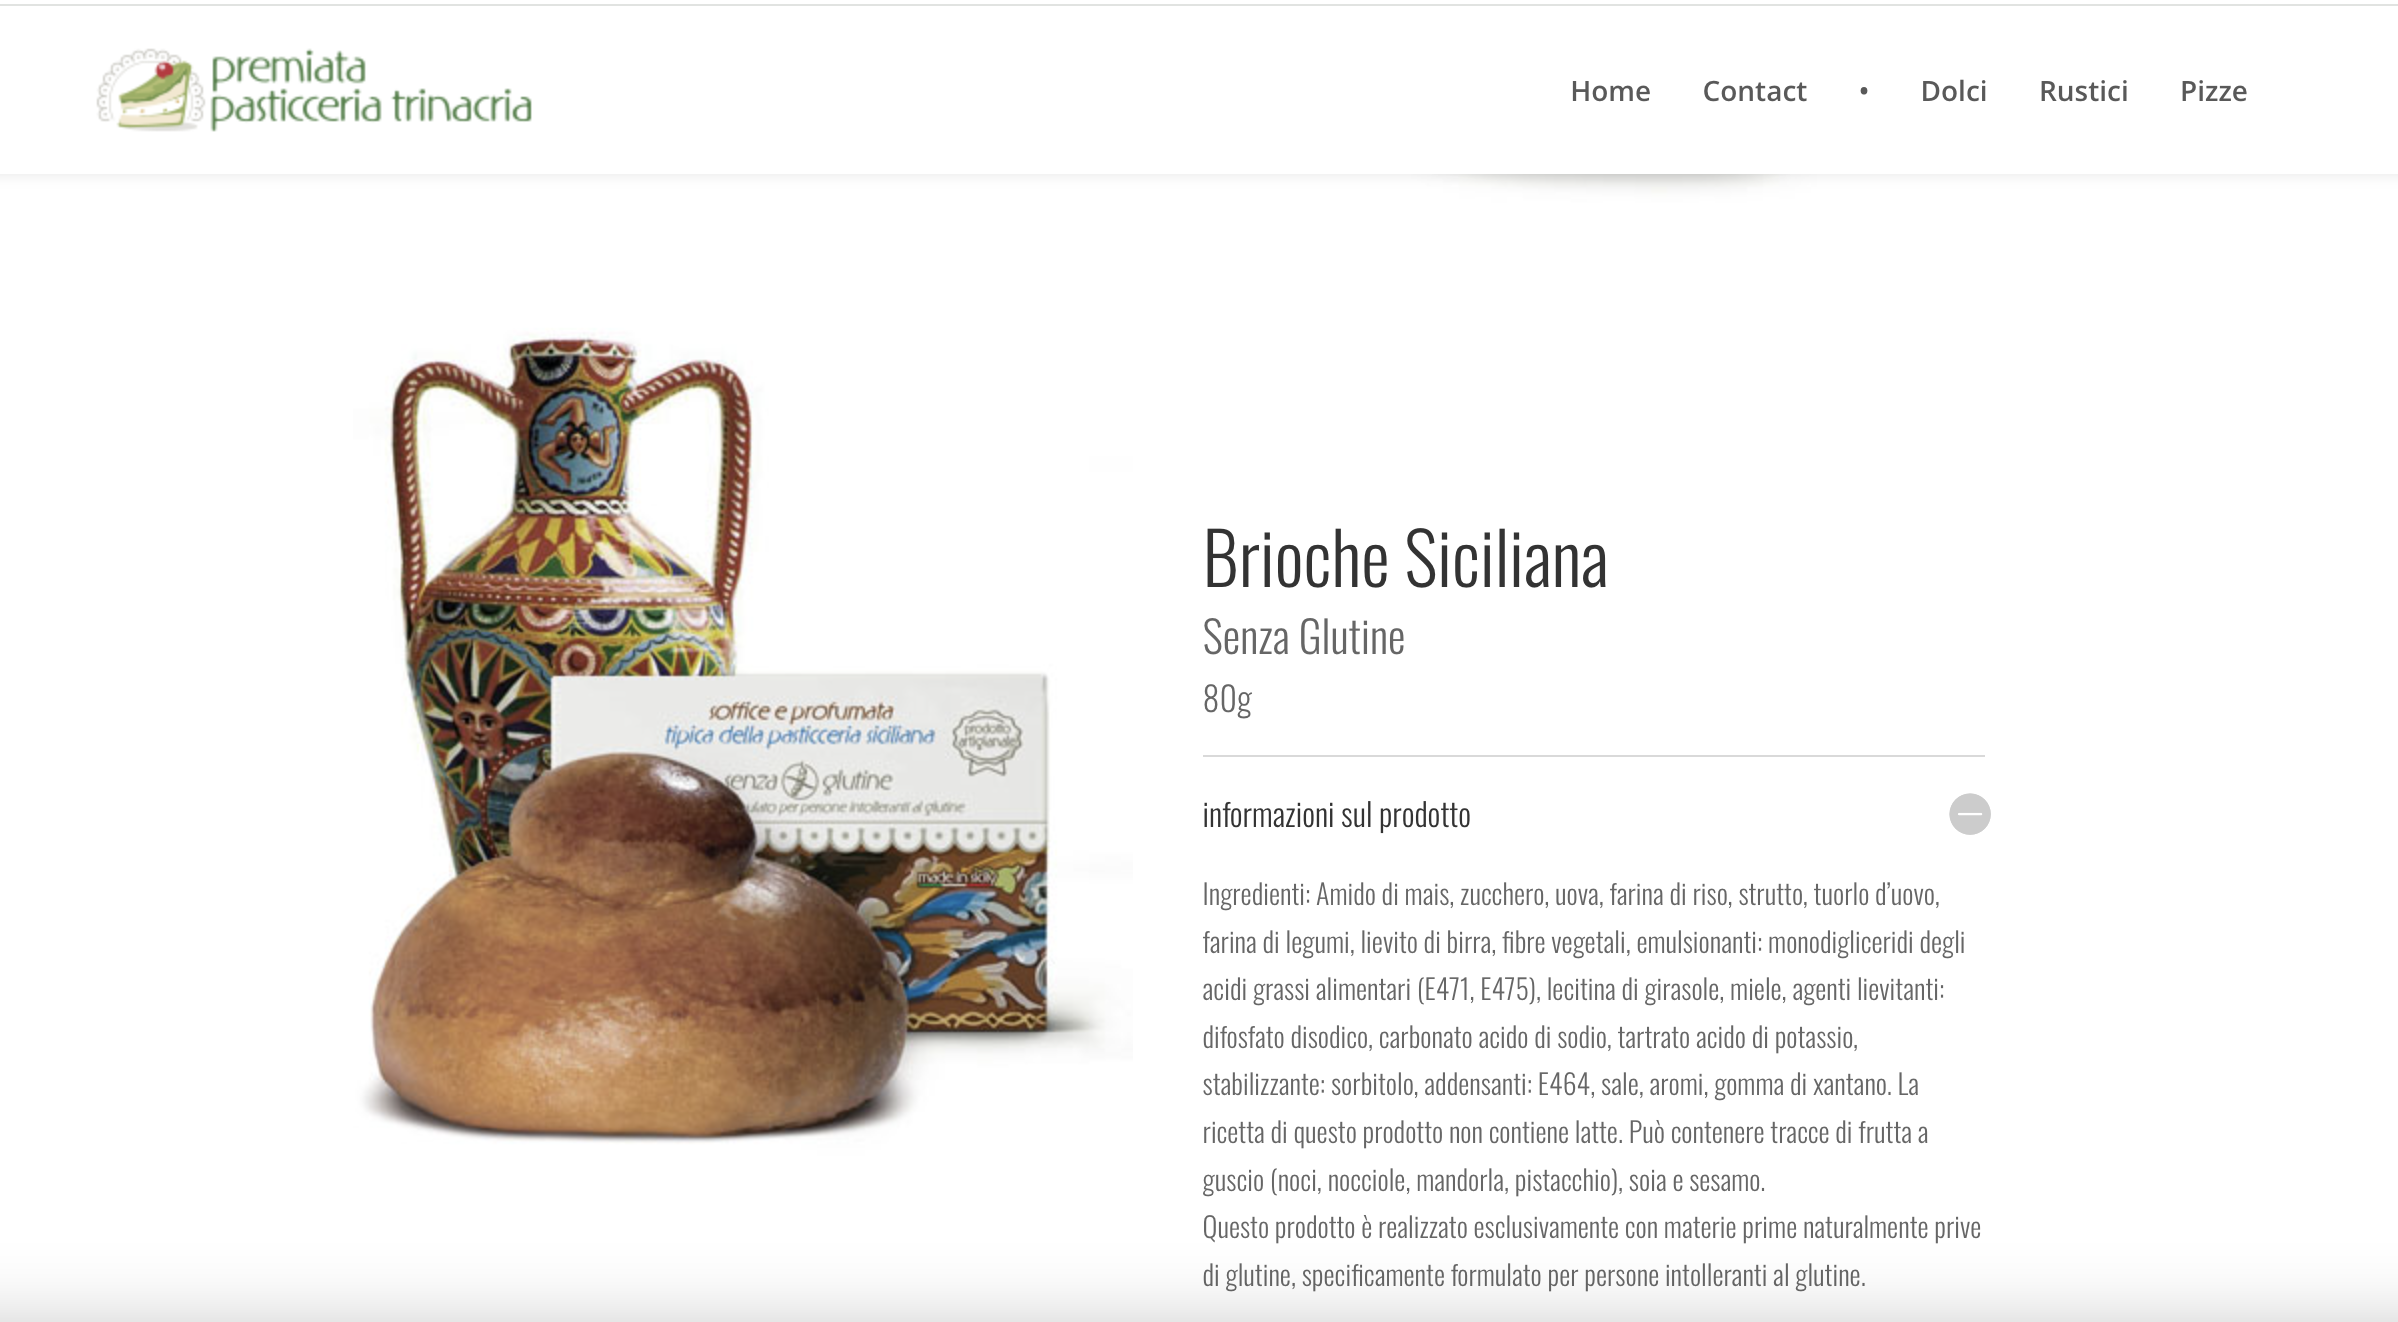 Premiata Pasticceria Trinacria - elenco degli ingredienti della "Brioche Siciliana Senza Glutine".